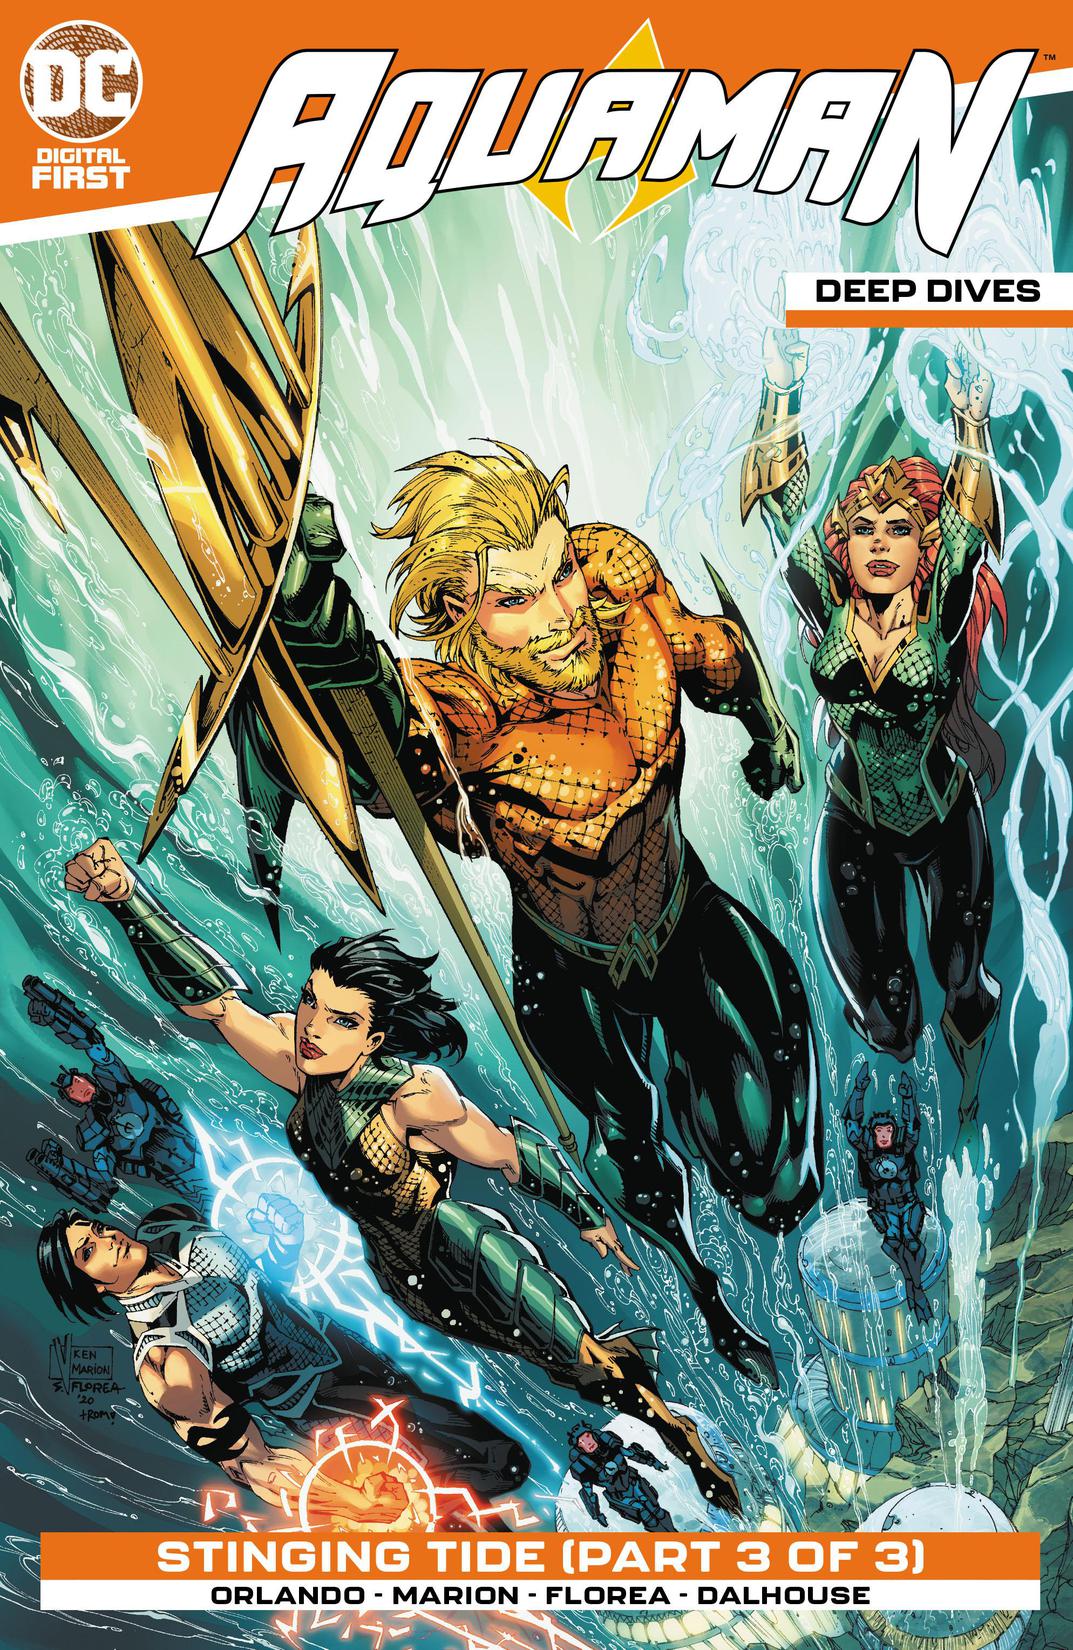 Aquaman: Deep Dives #7 preview images